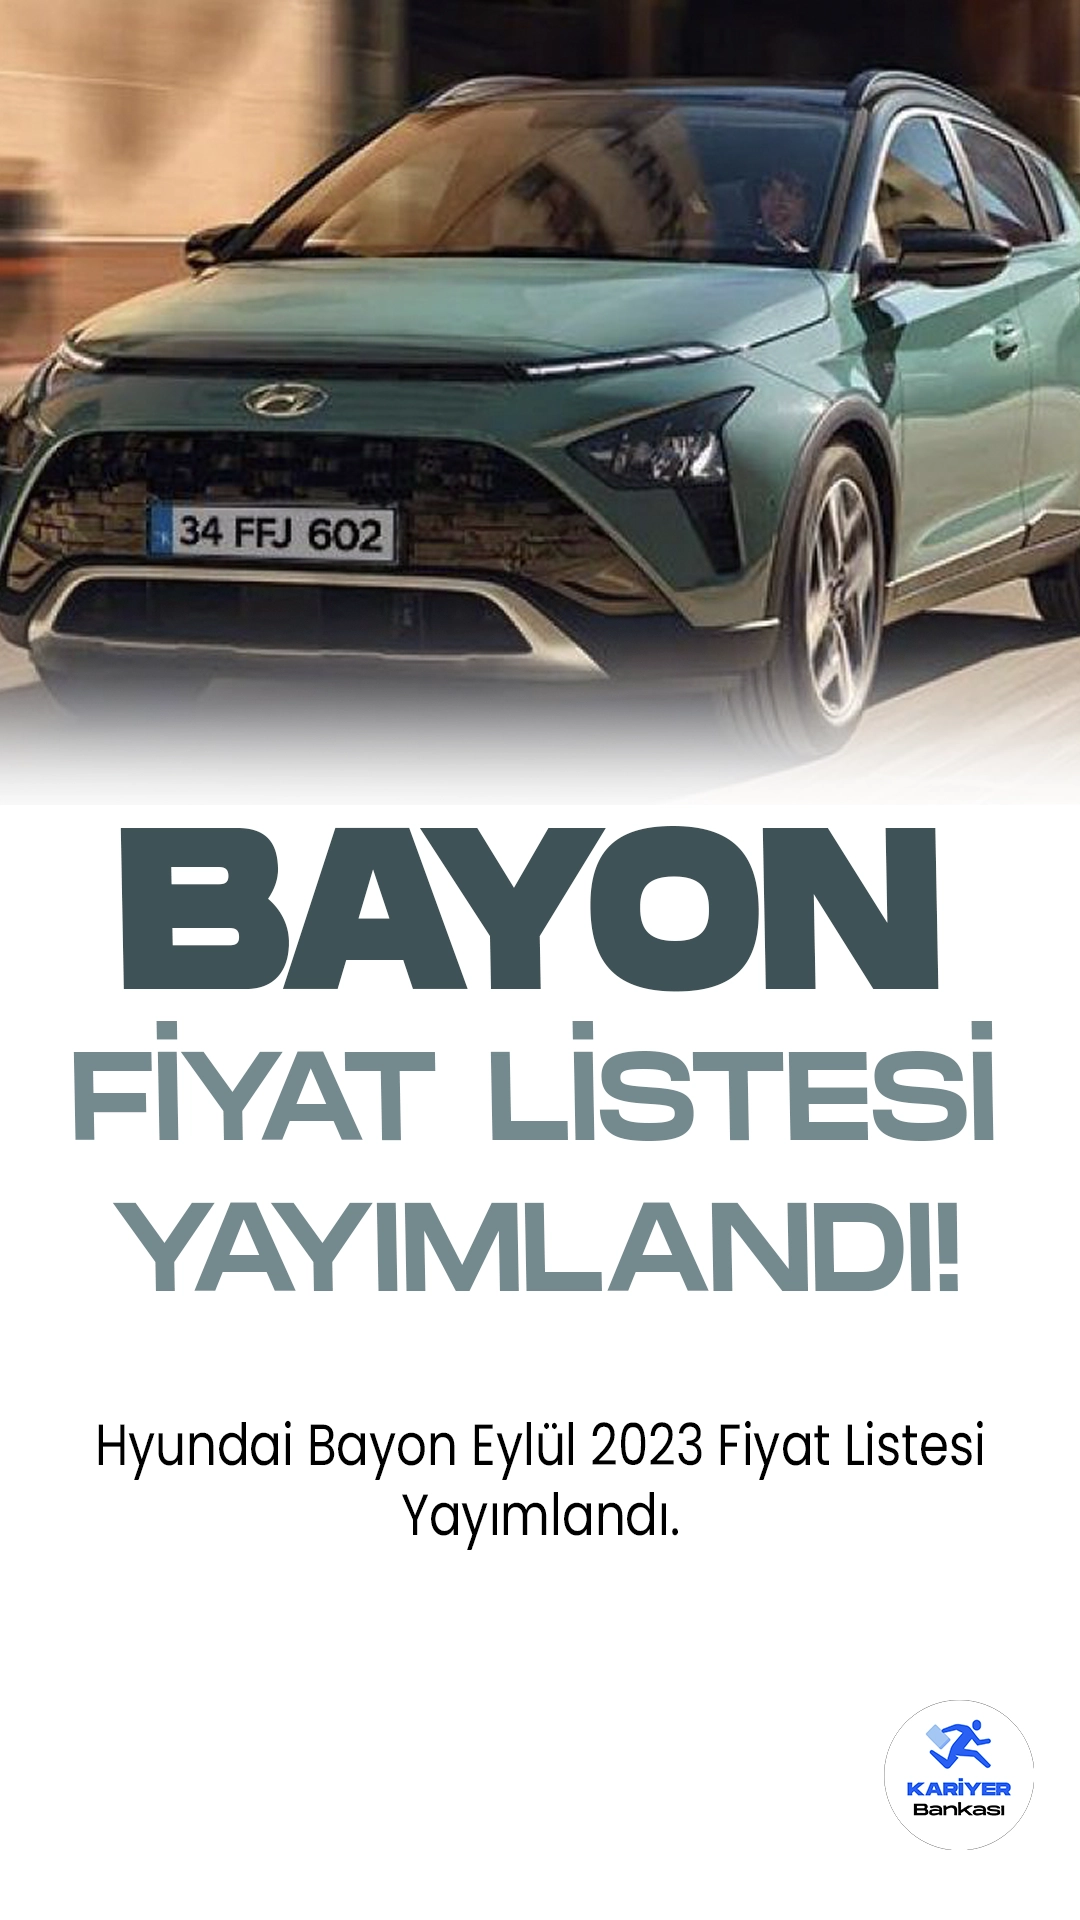 Hyundai Bayon Eylül 2023 Fiyat Listesi Yayımlandı.Hyundai'nin kompakt SUV segmentine getirdiği son yenilik, Bayon modeliyle karşımıza çıkıyor. Bayon, sadece 100 kelimede anlatılmakla kalmıyor, aynı zamanda şehir içi ve şehir dışı sürüşlerde mükemmel bir denge sunuyor.